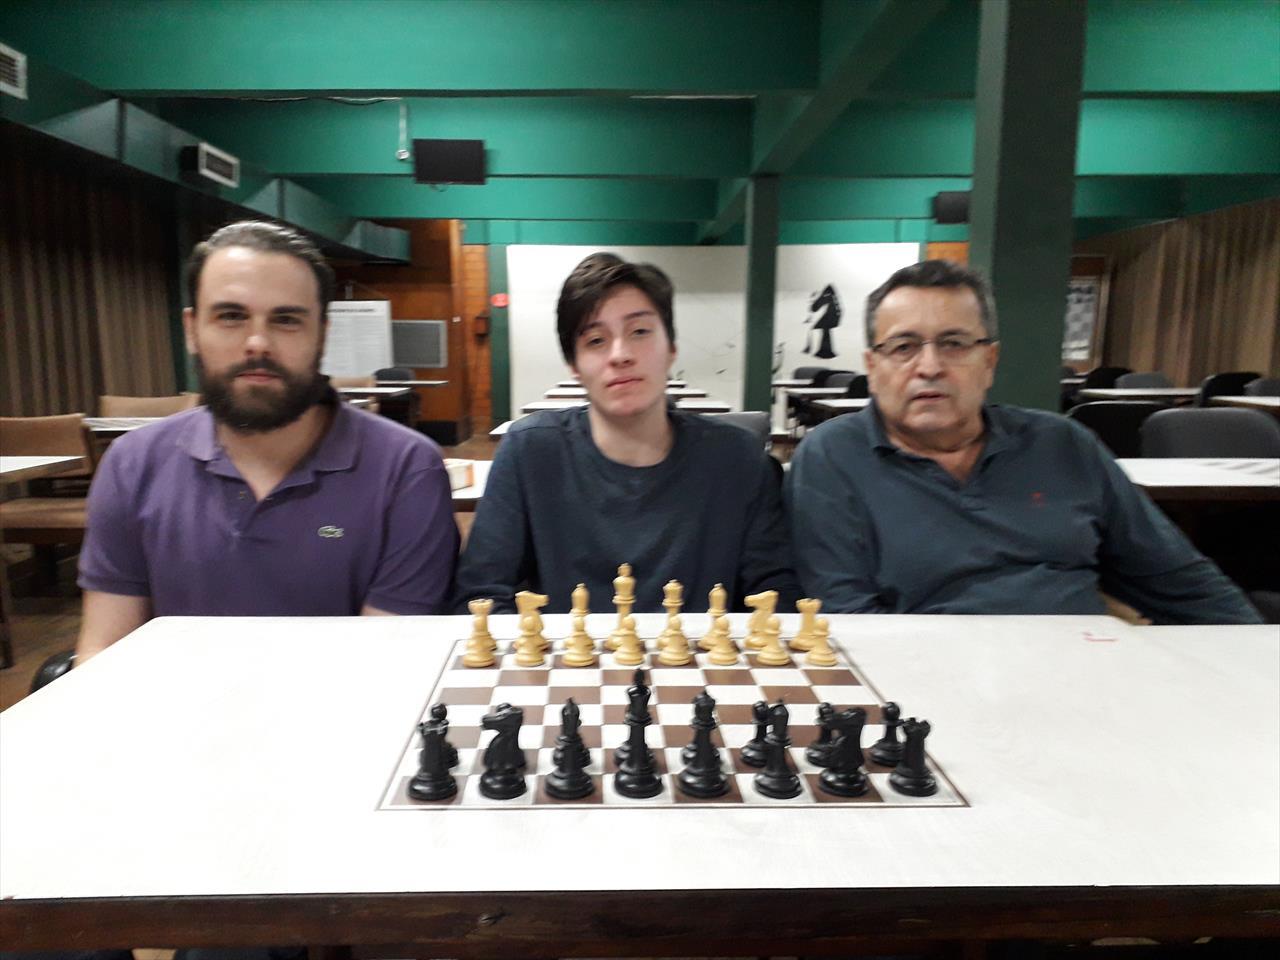 Xadrez do Tijuca Tênis Clube (@ttc_chess) / X